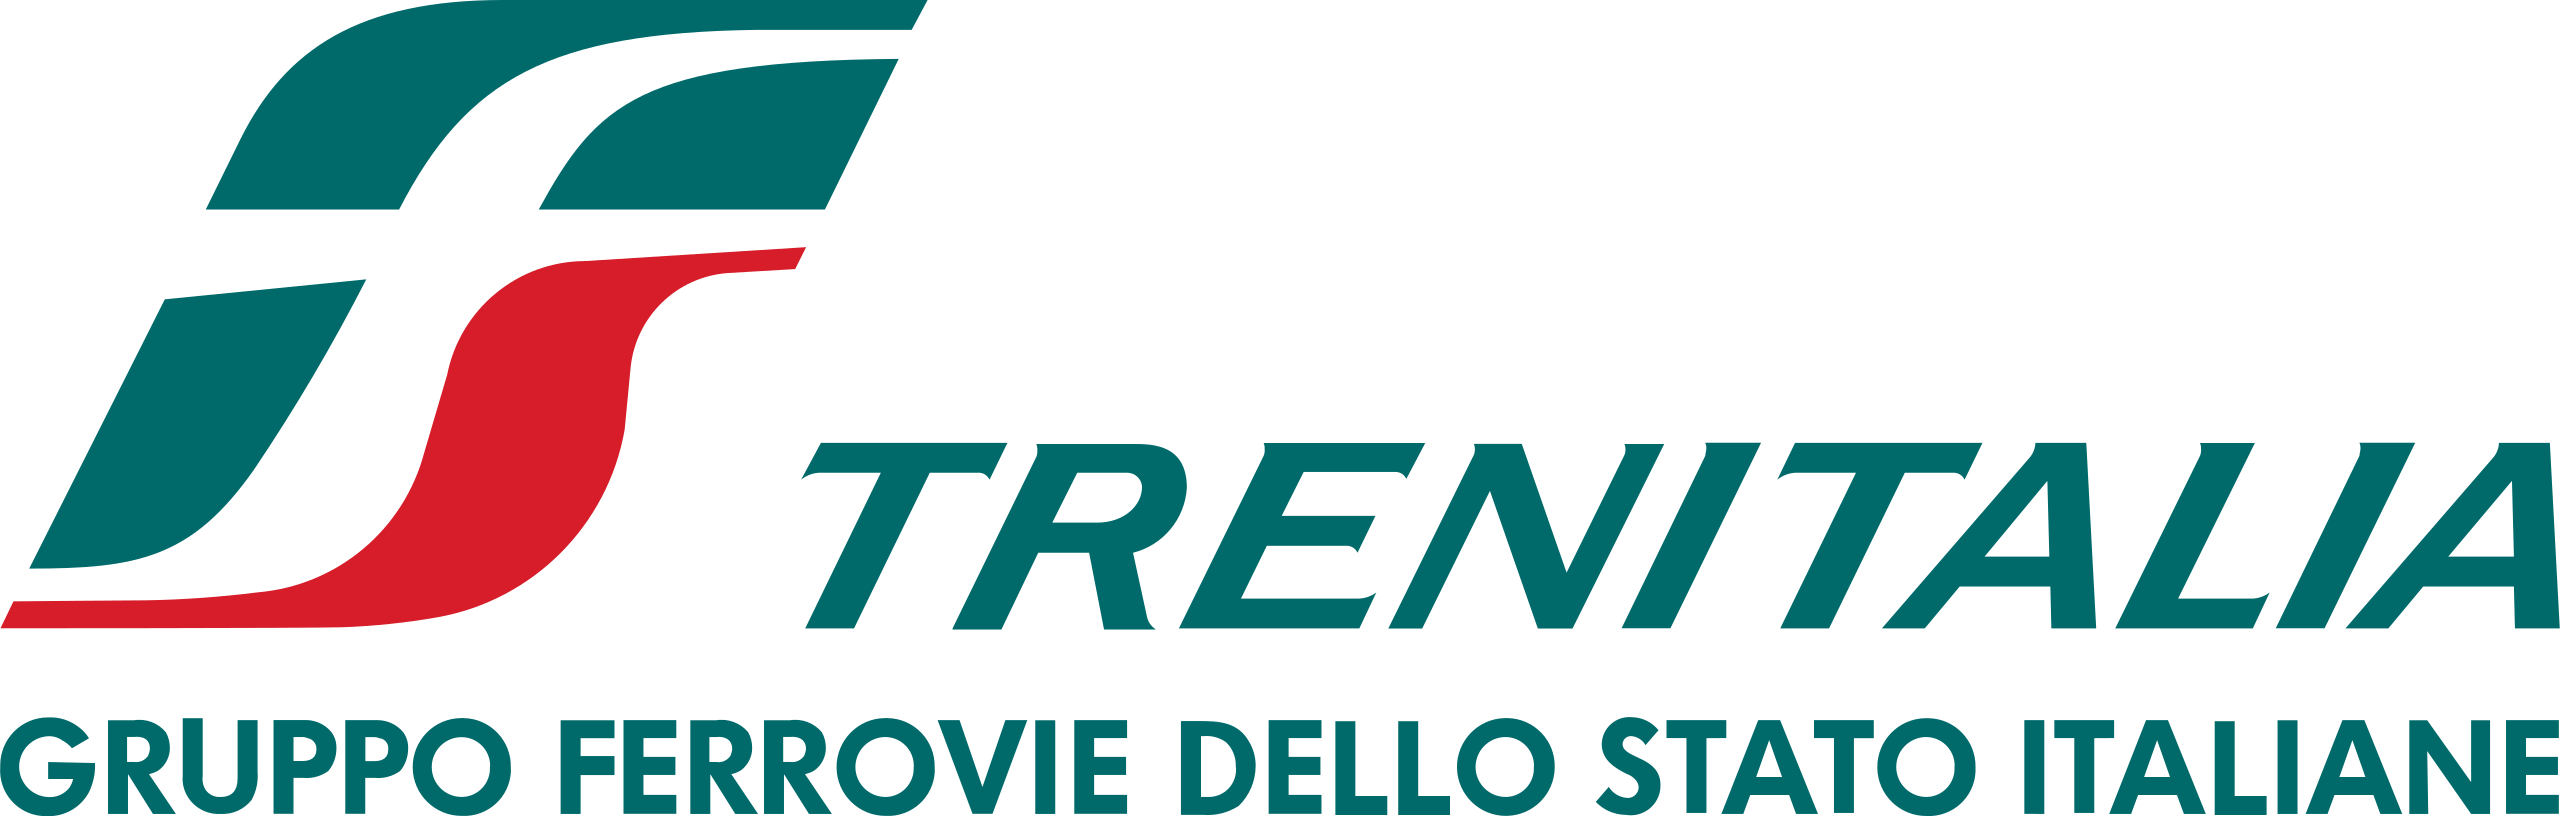 Logo Trenitalia.svg